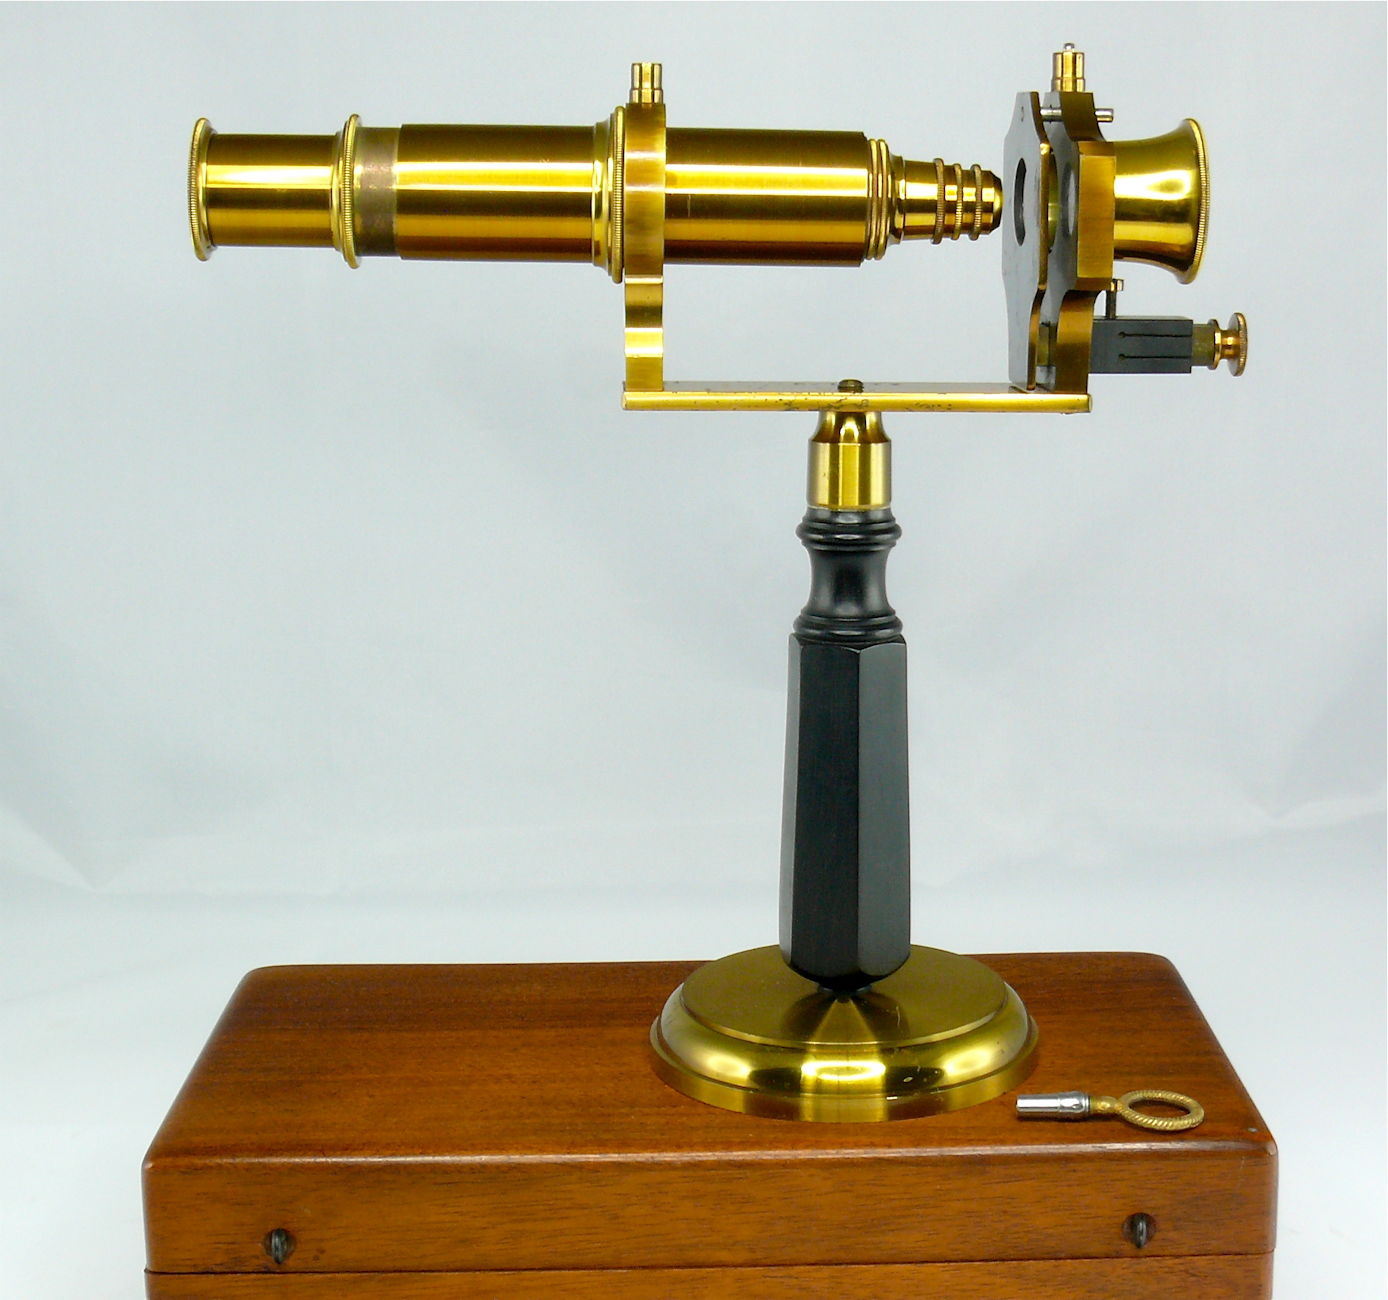 Microscope composé
(à main, de démonstration)